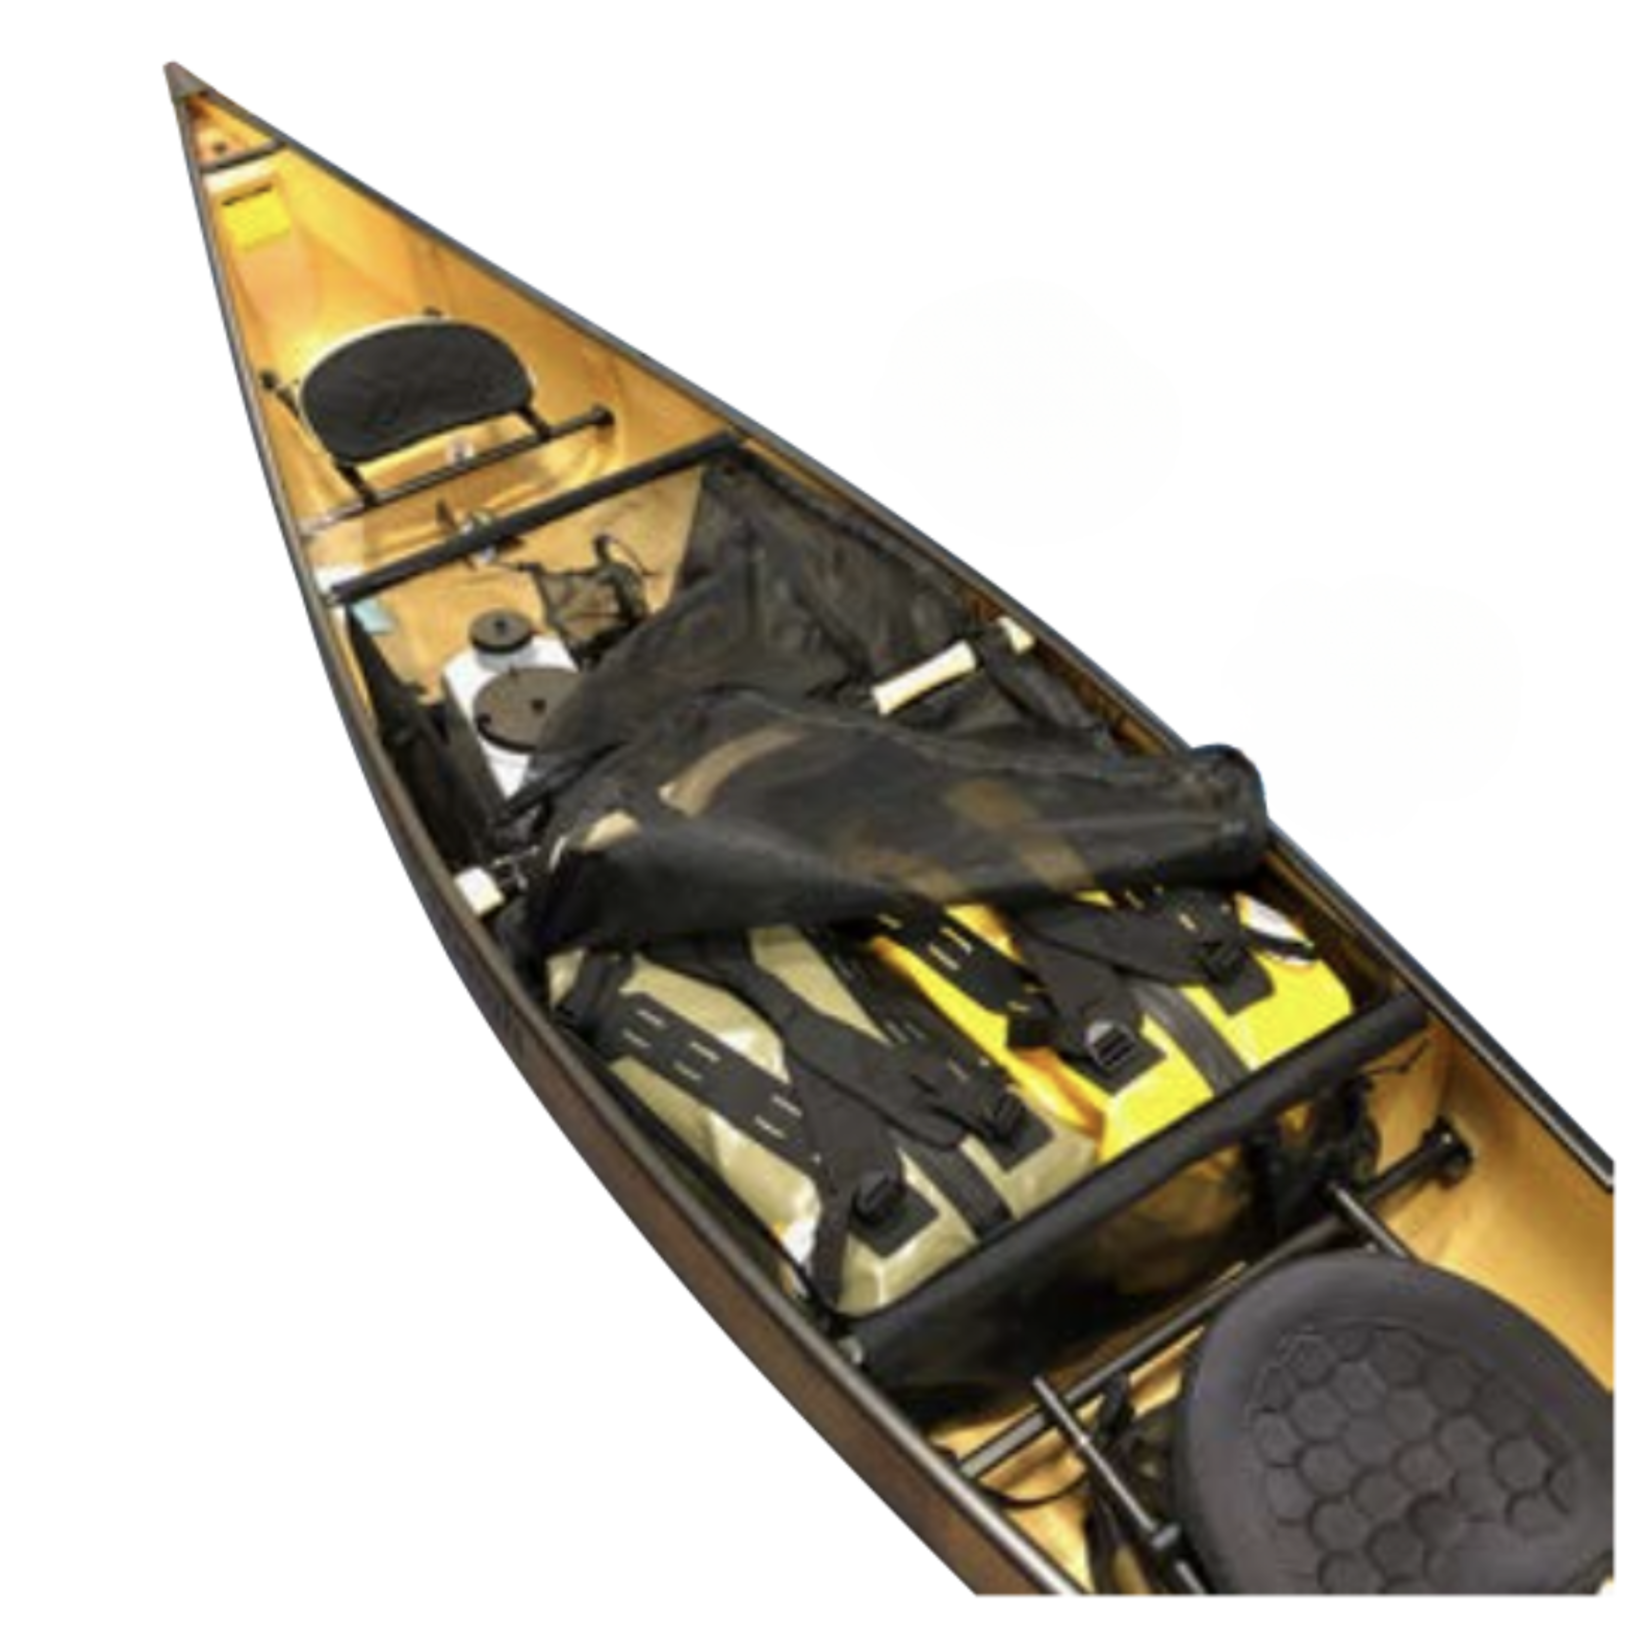 Whitewater Designs Canoe Tandem Center Bag: Bow of Yoke